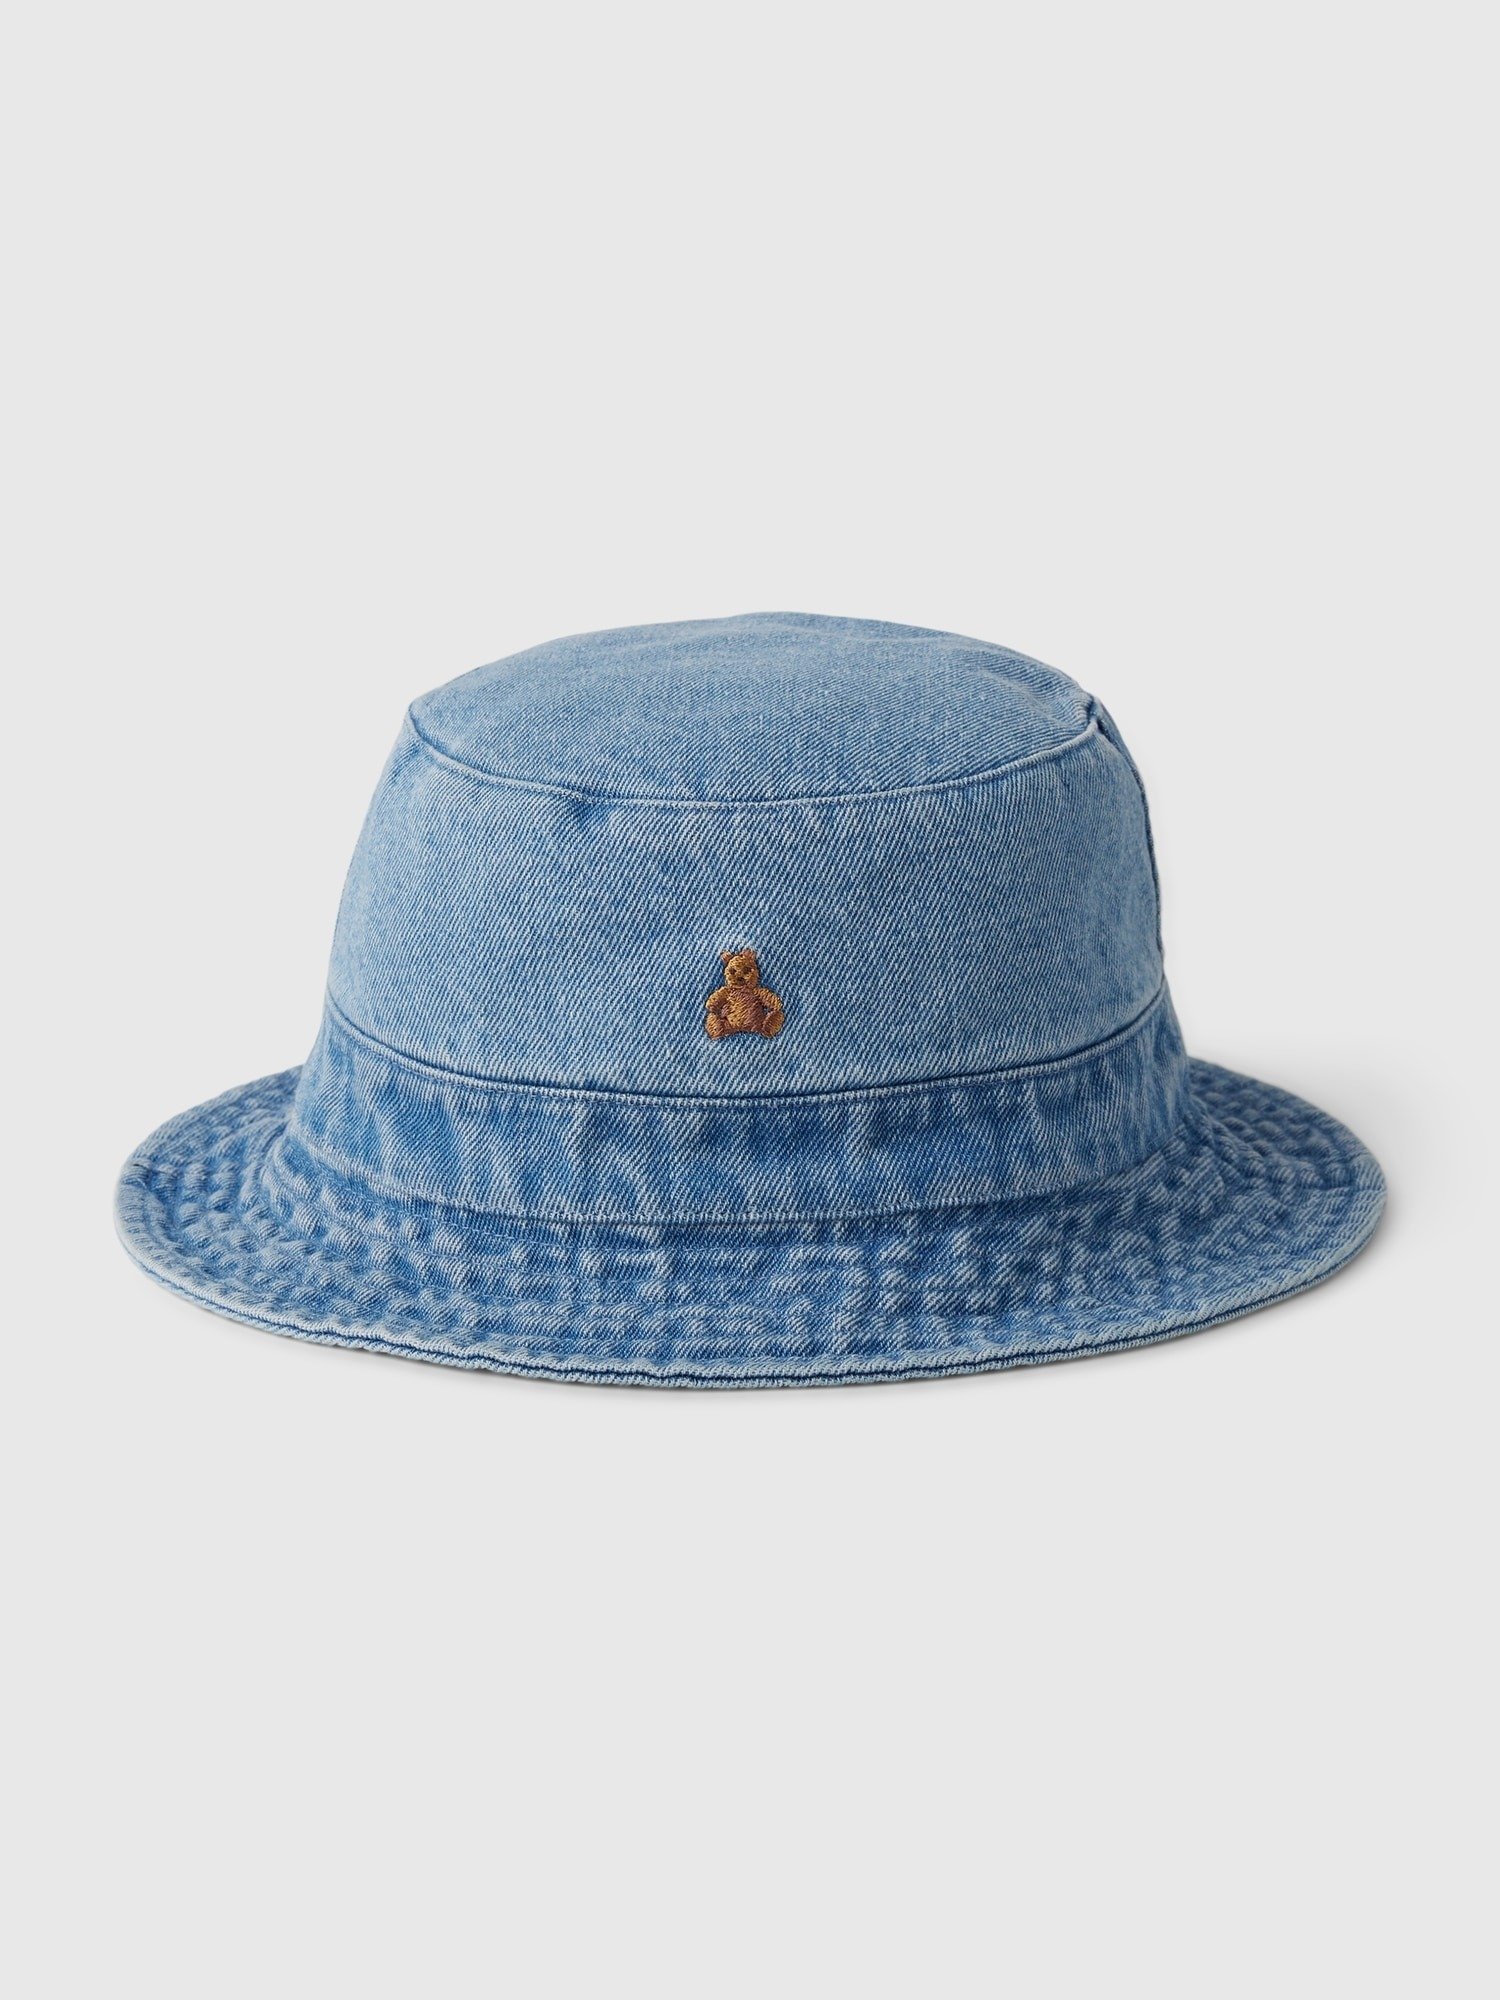 Brannan Bear İşlemeli Denim Bucket Şapka product image